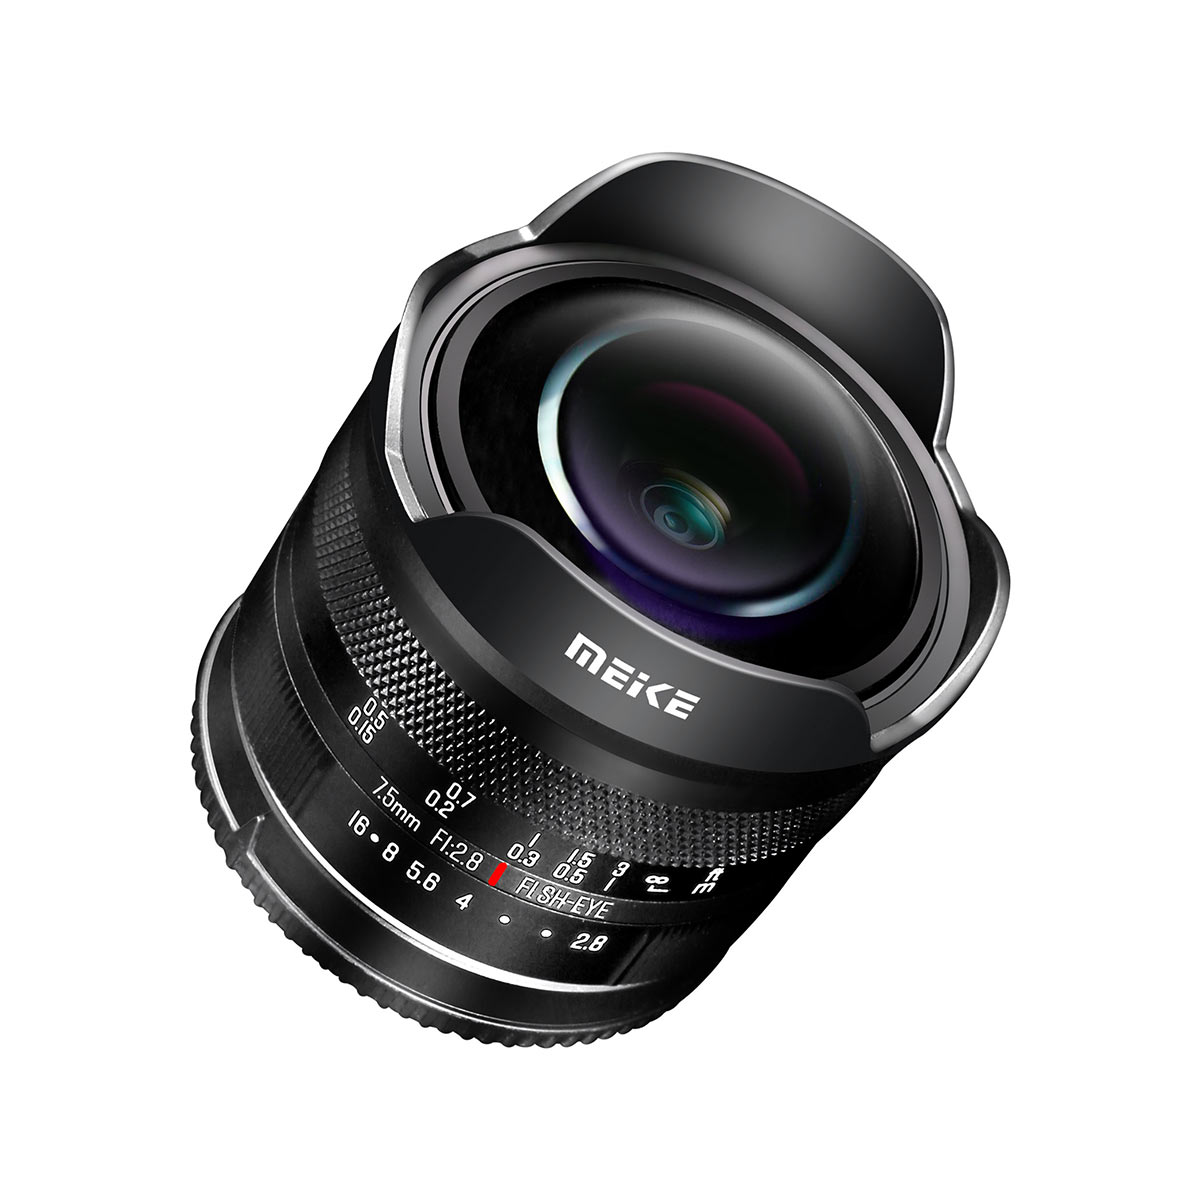 Meike 7.5mm F2.8 Aps-C Manual Focus Diagonal Fisheye lens